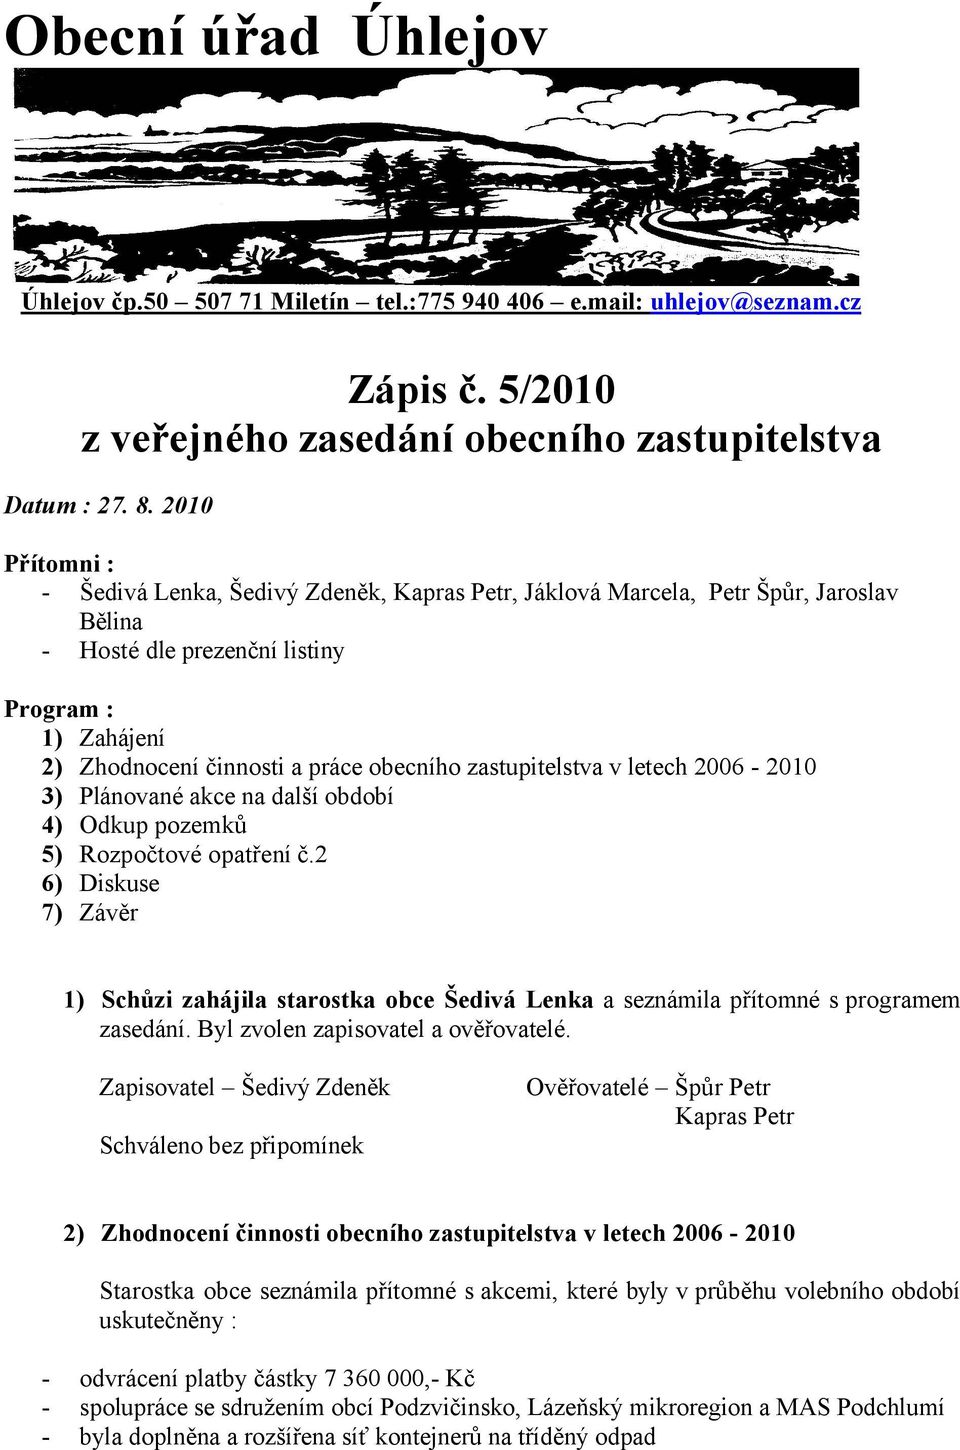 zastupitelstva v letech 2006-2010 3) Plánované akce na další období 4) Odkup pozemků 5) Rozpočtové opatření č.